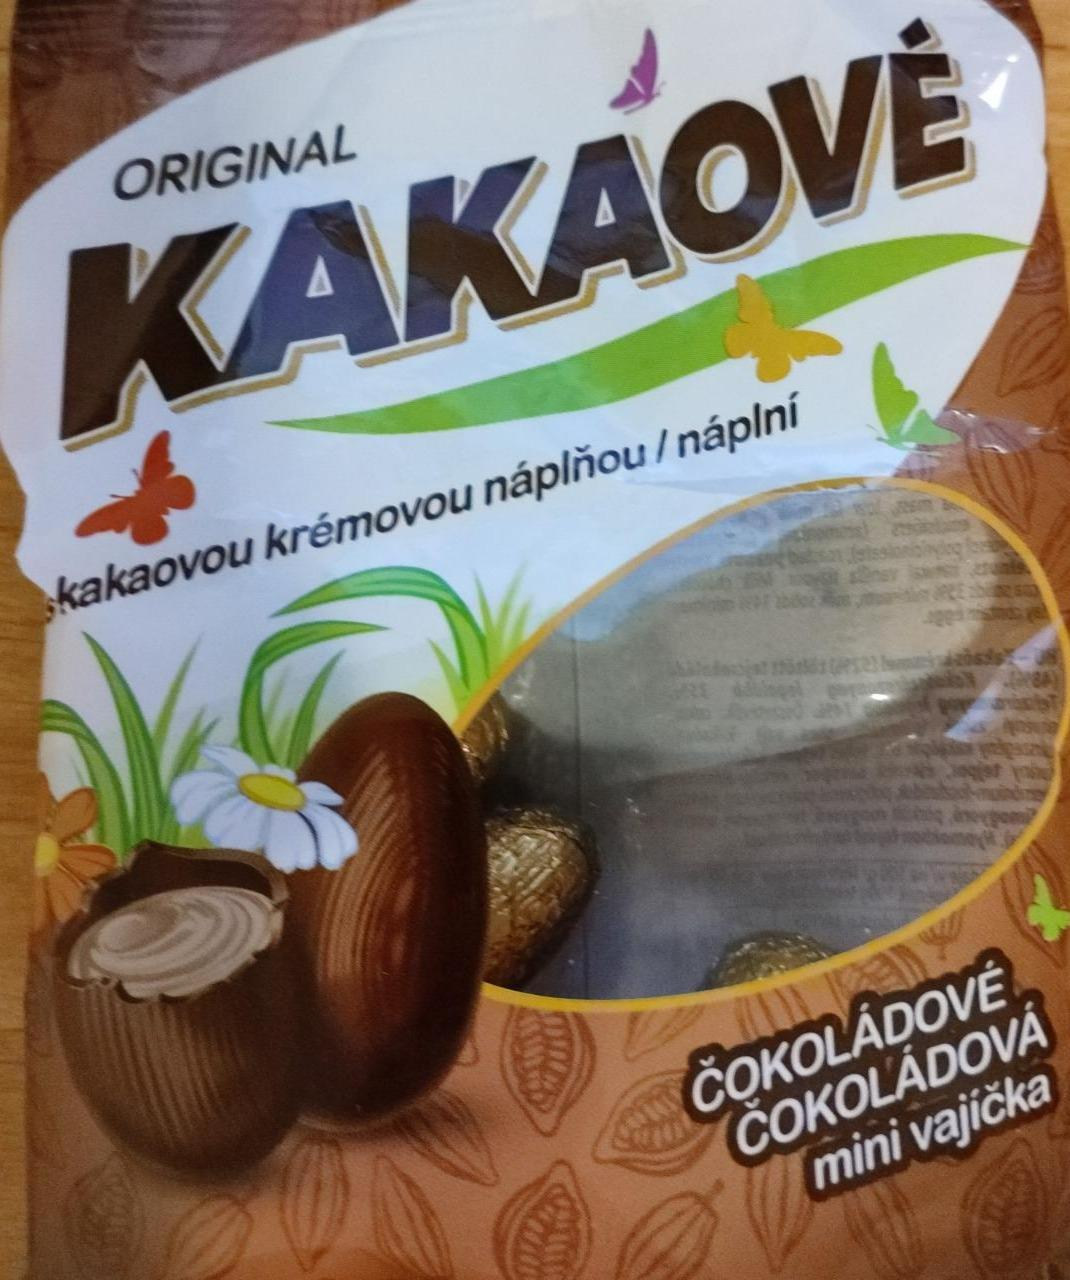 Fotografie - Čokoládová Mini vajíčka Original Kakaové